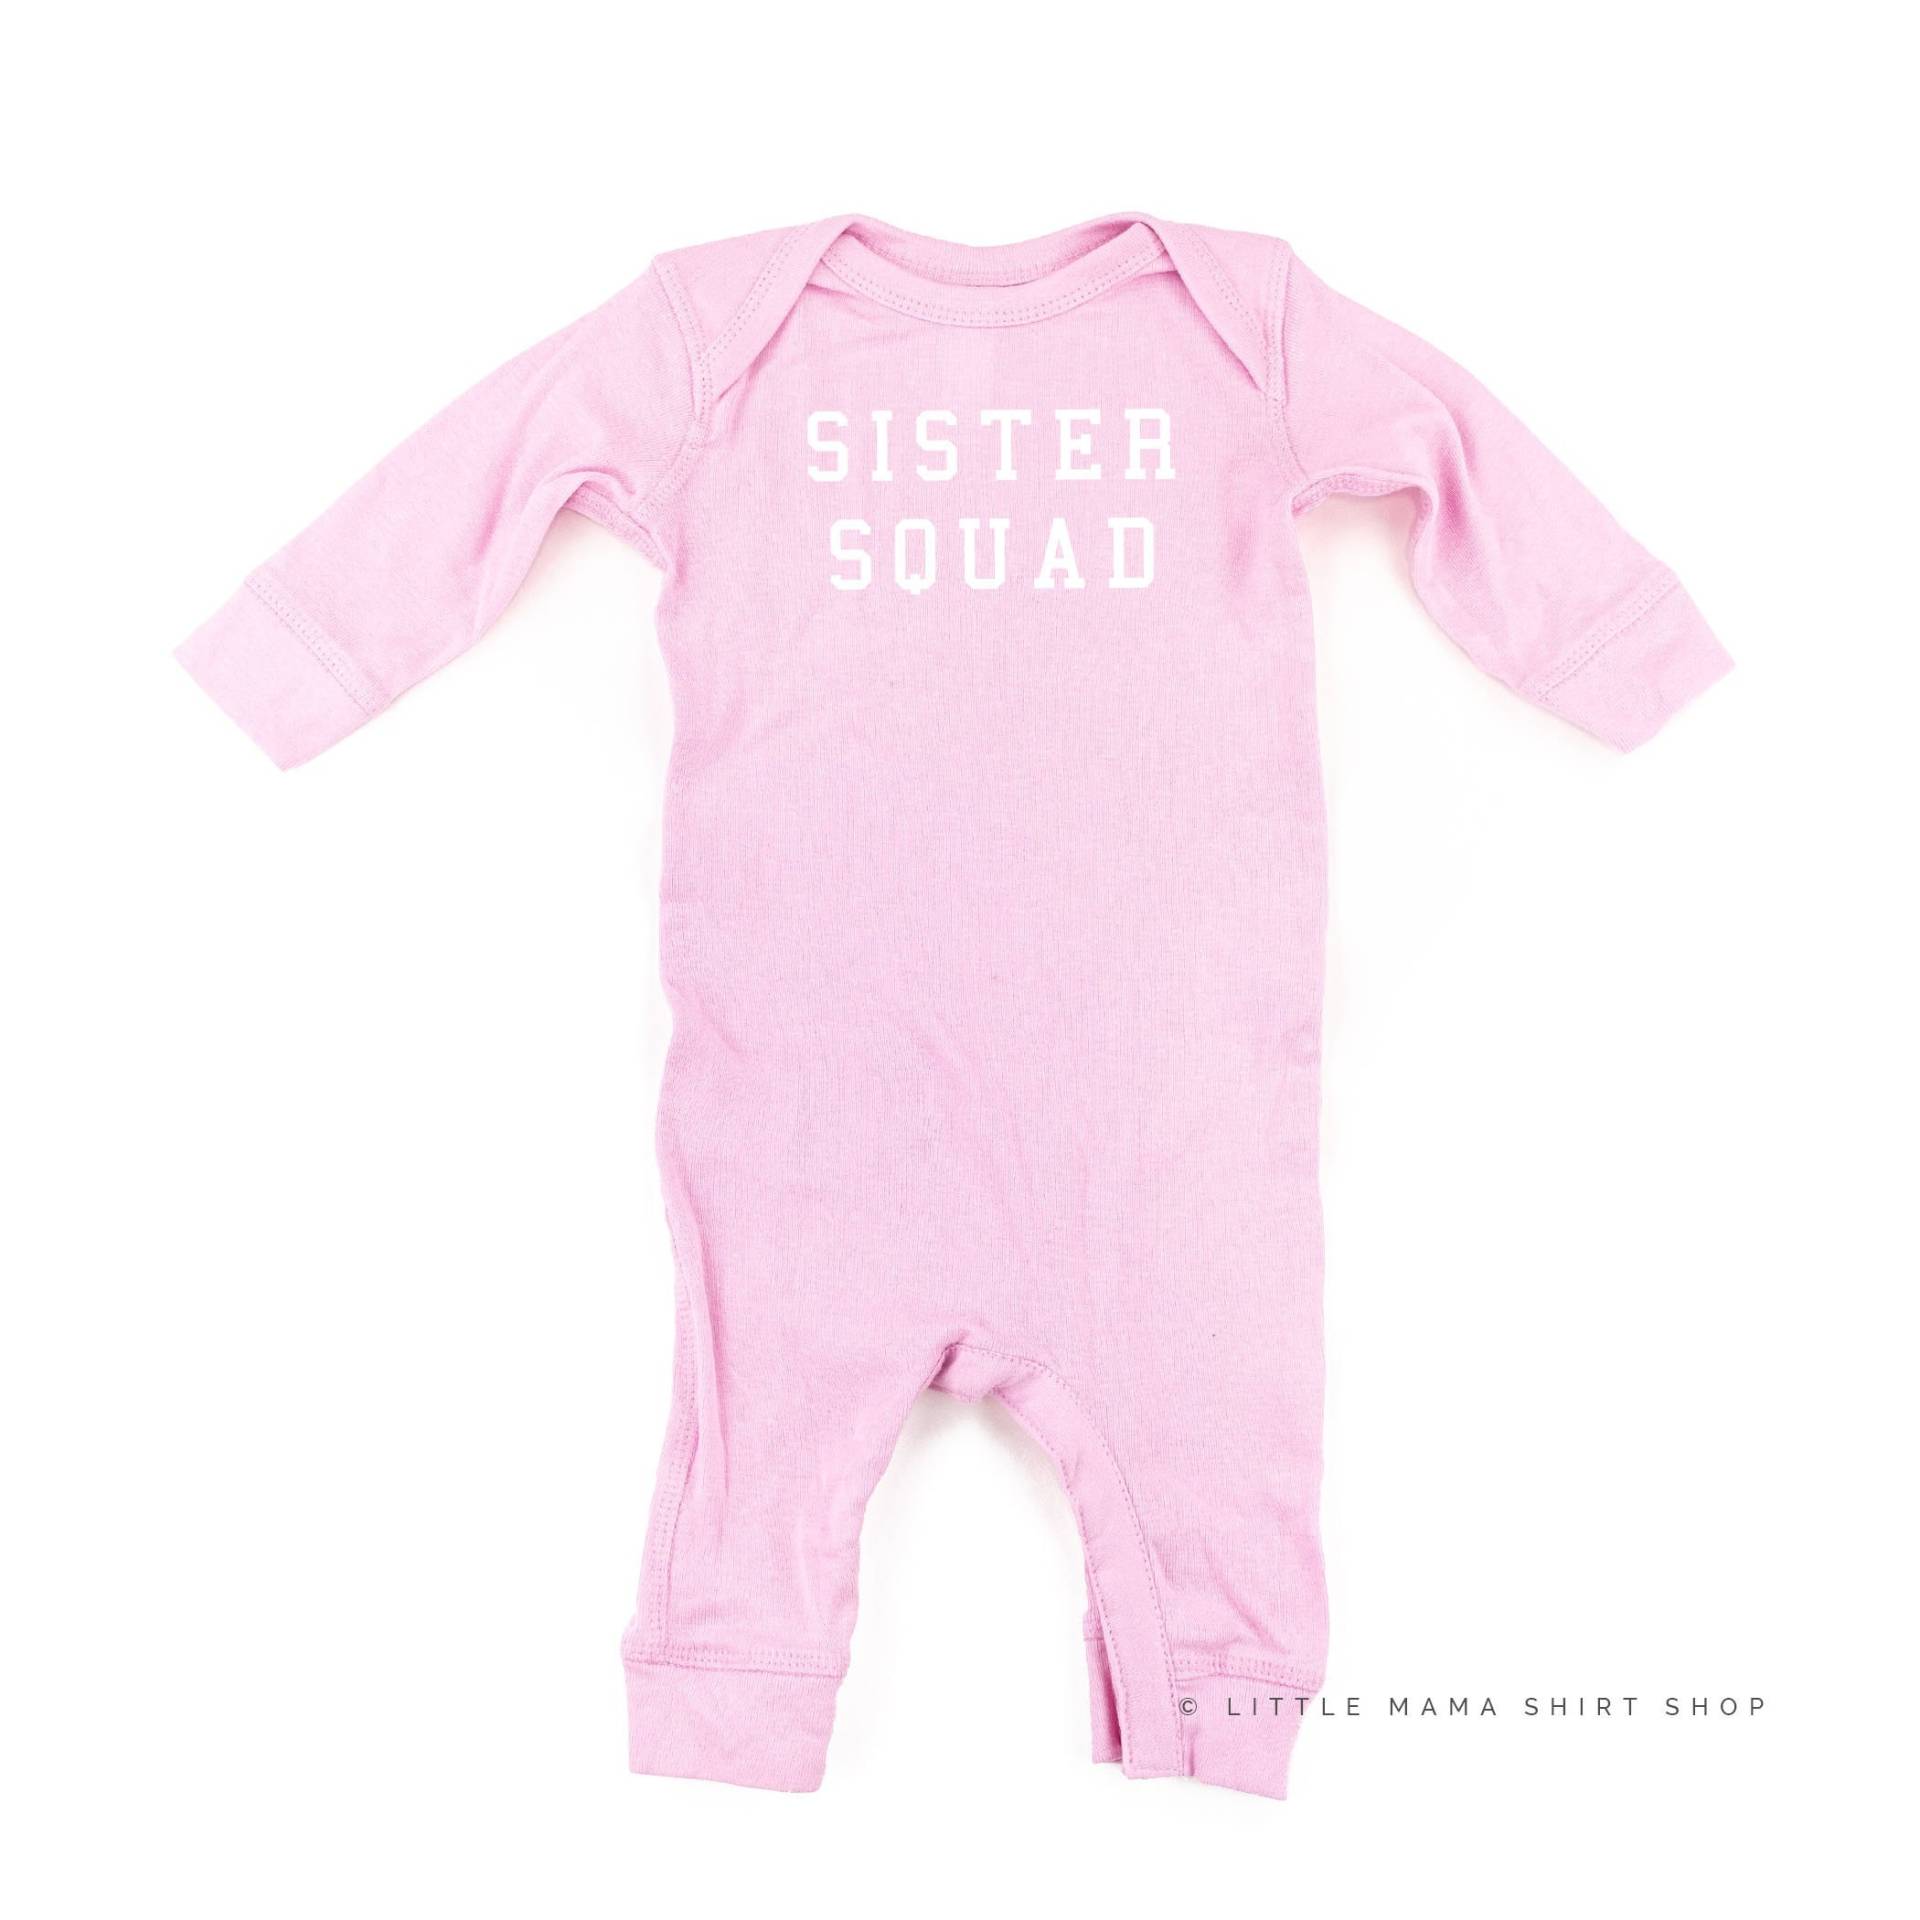 Sister Squad | Schlafwagen Baby Body Grafik Tees Strampler Schlafer Schwester Shirt Geschwister von LittleMamaShirtShop